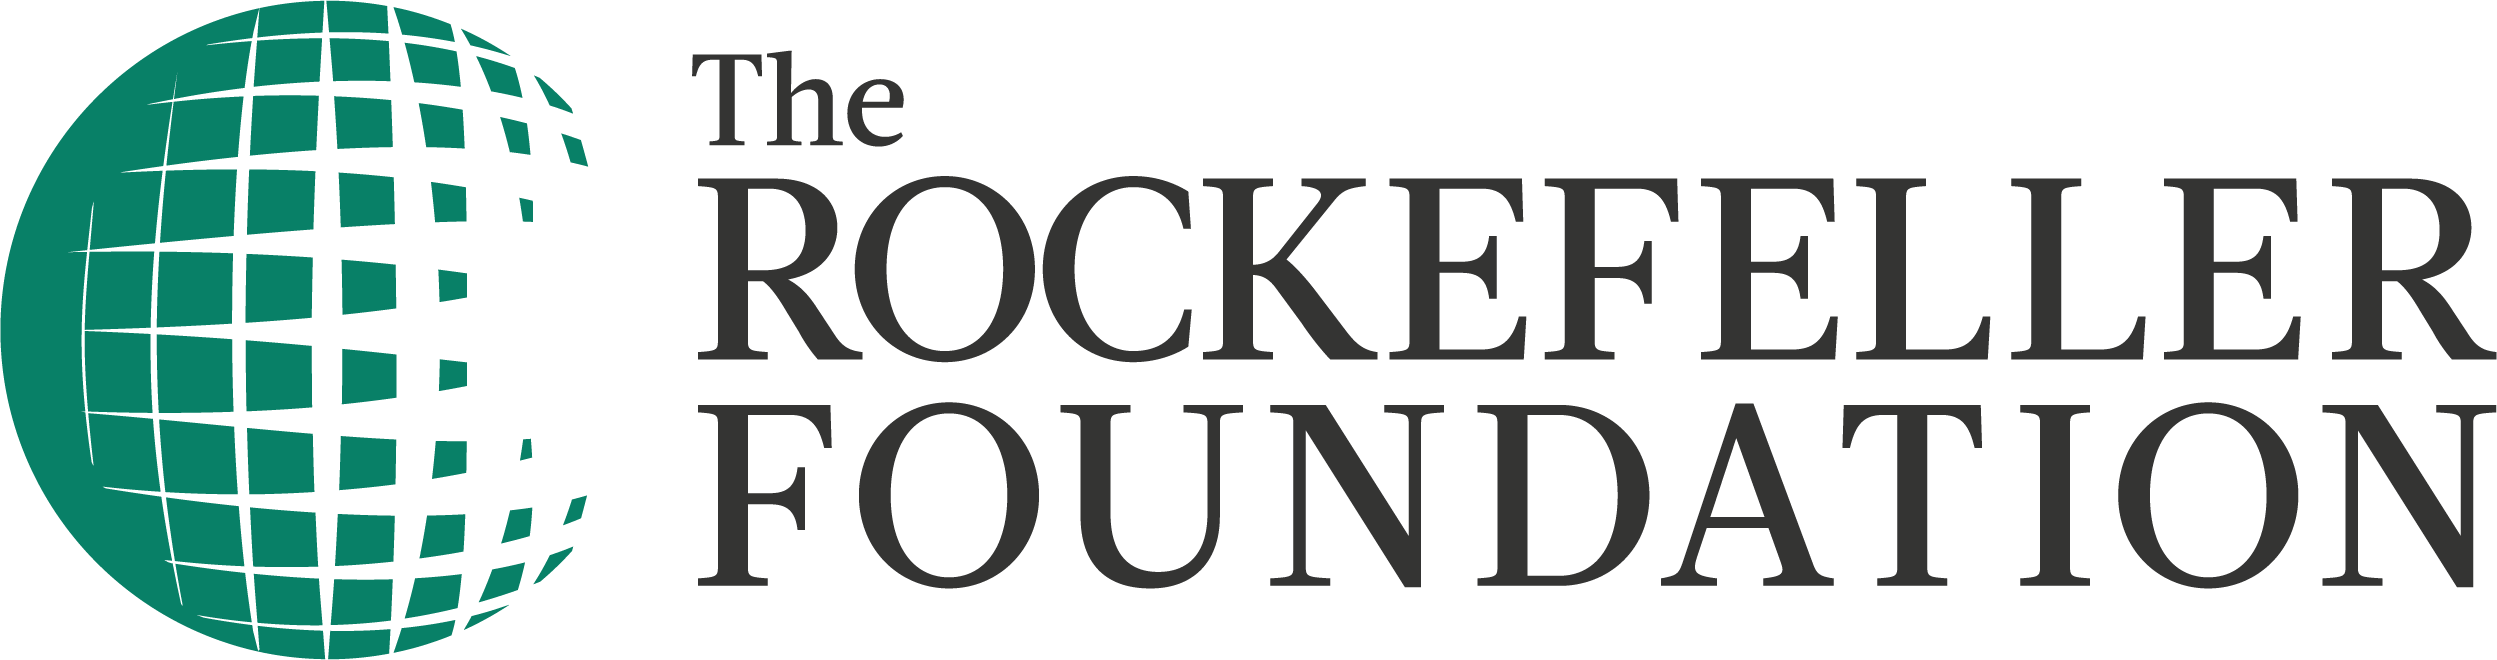 Rockefeller Foundation Logo.png